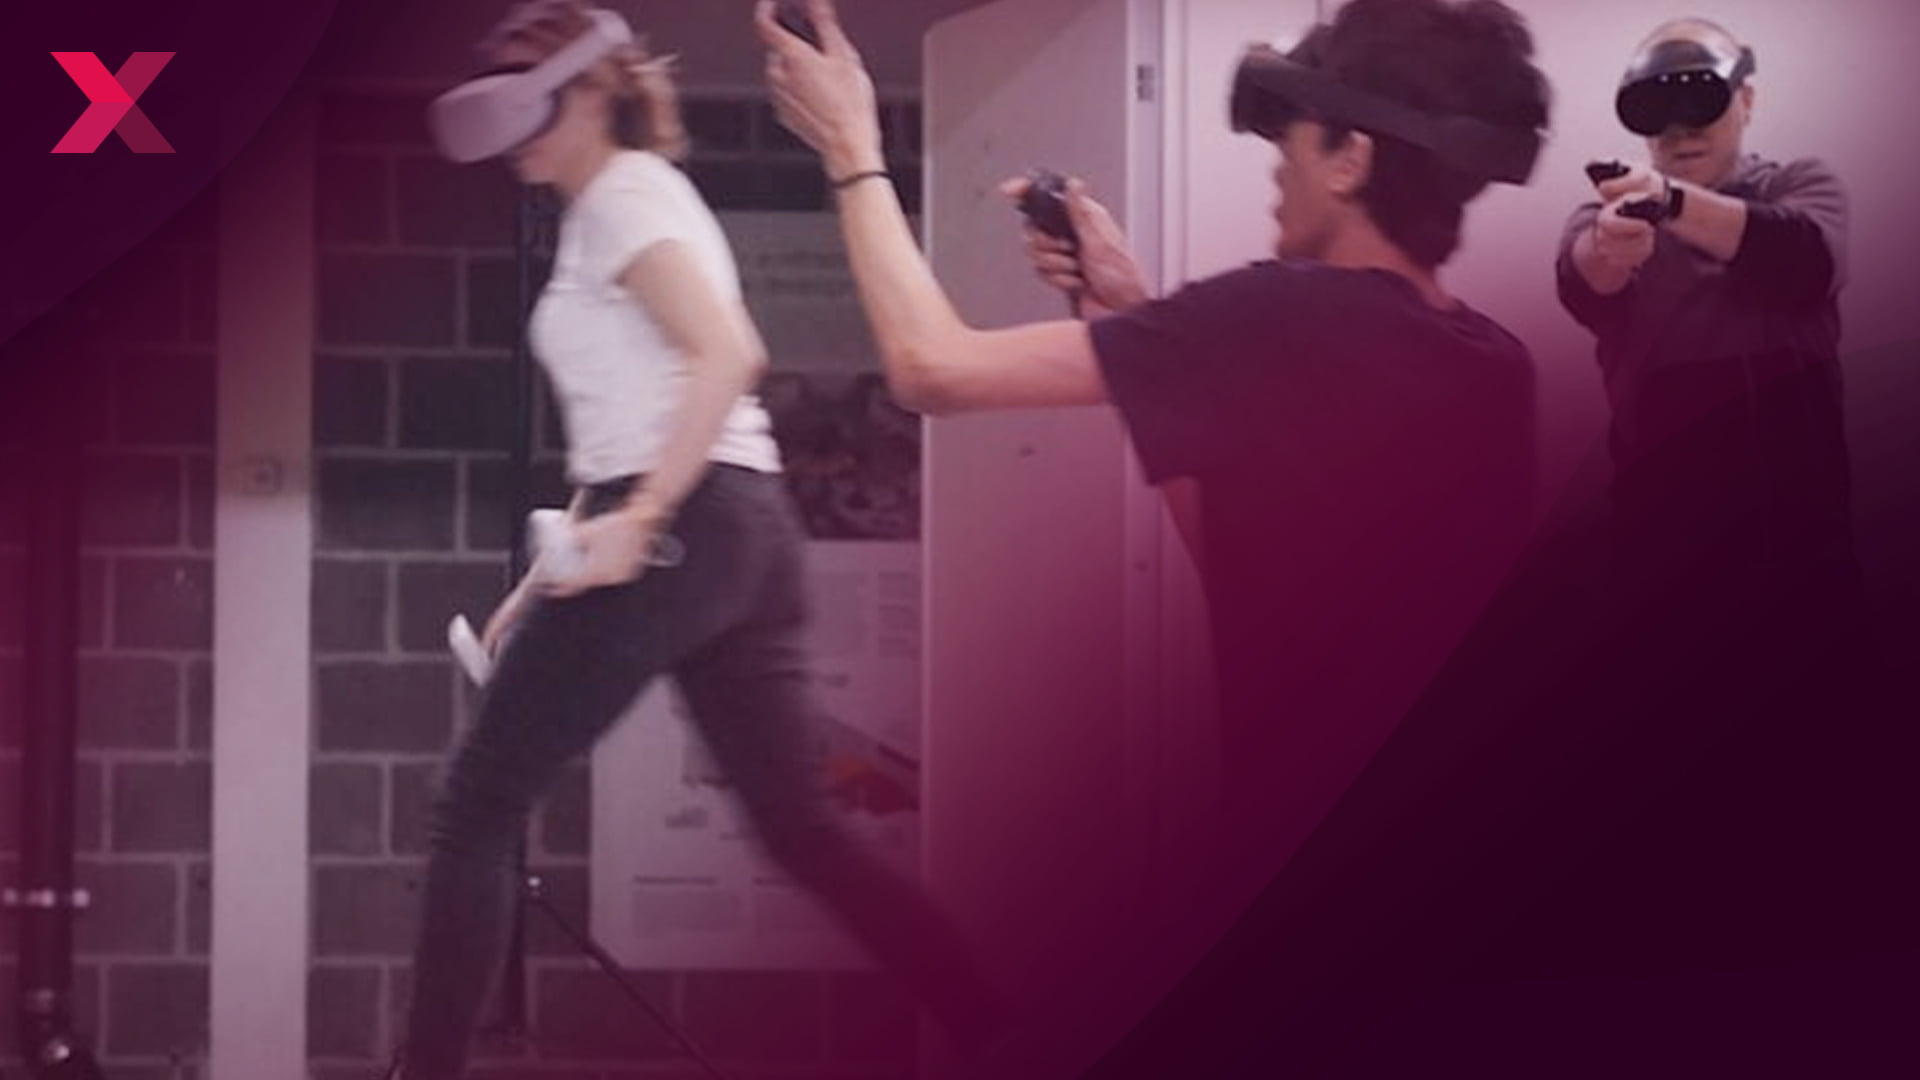 VR-Spiele, neue Quest-Showcase-App & VR-Übelkeit-Forschung